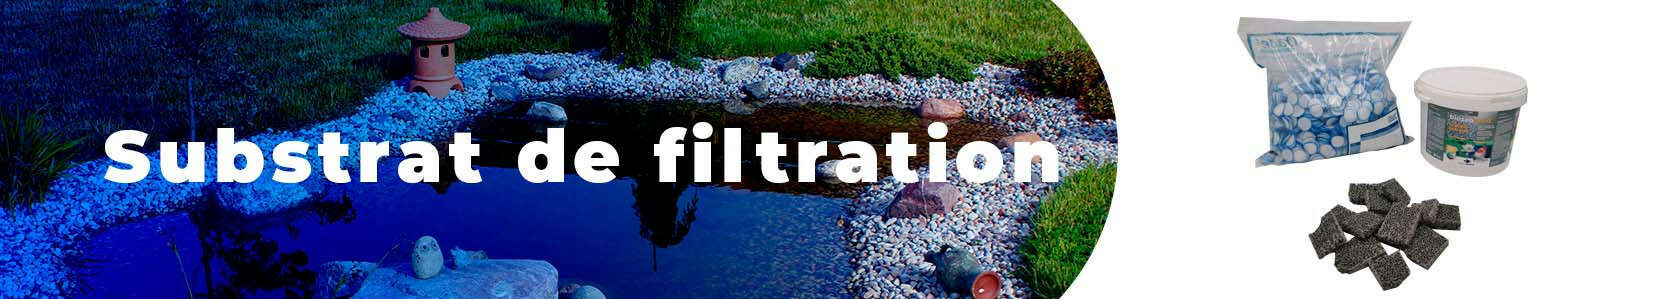 Substrat de filtration